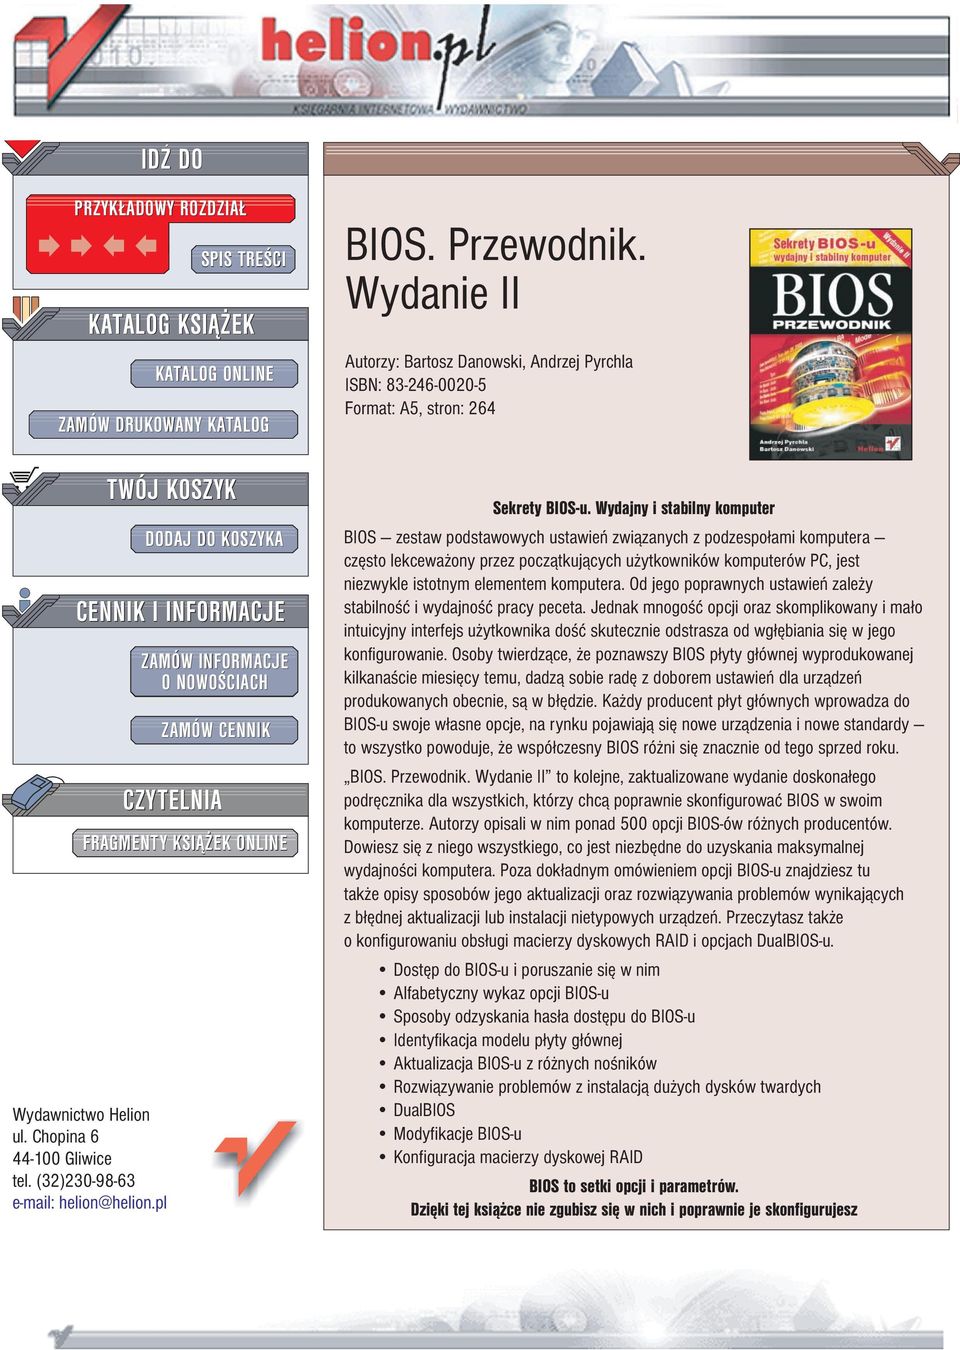 Wydanie II Autorzy: Bartosz Danowski, Andrzej Pyrchla ISBN: 83-246-0020-5 Format: A5, stron: 264 Sekrety BIOS-u.